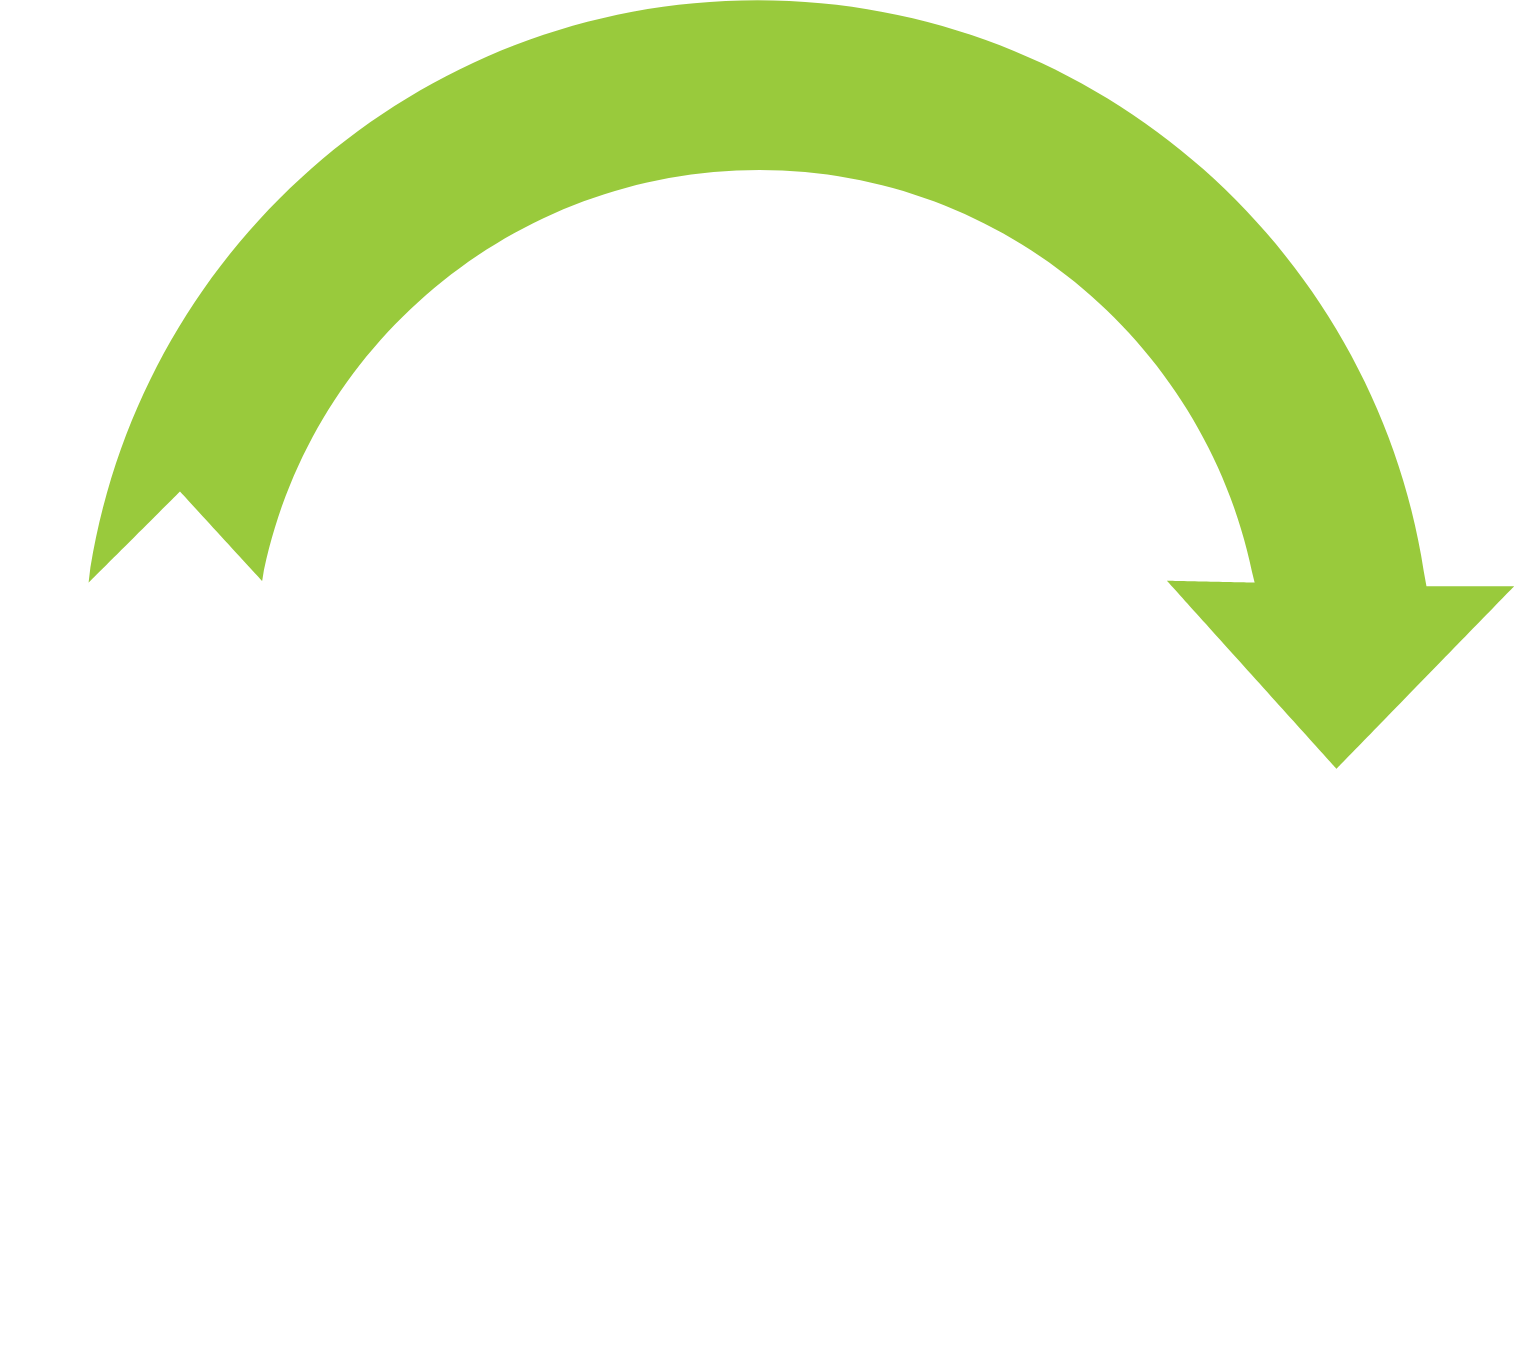 Open Lending logo for dark backgrounds (transparent PNG)